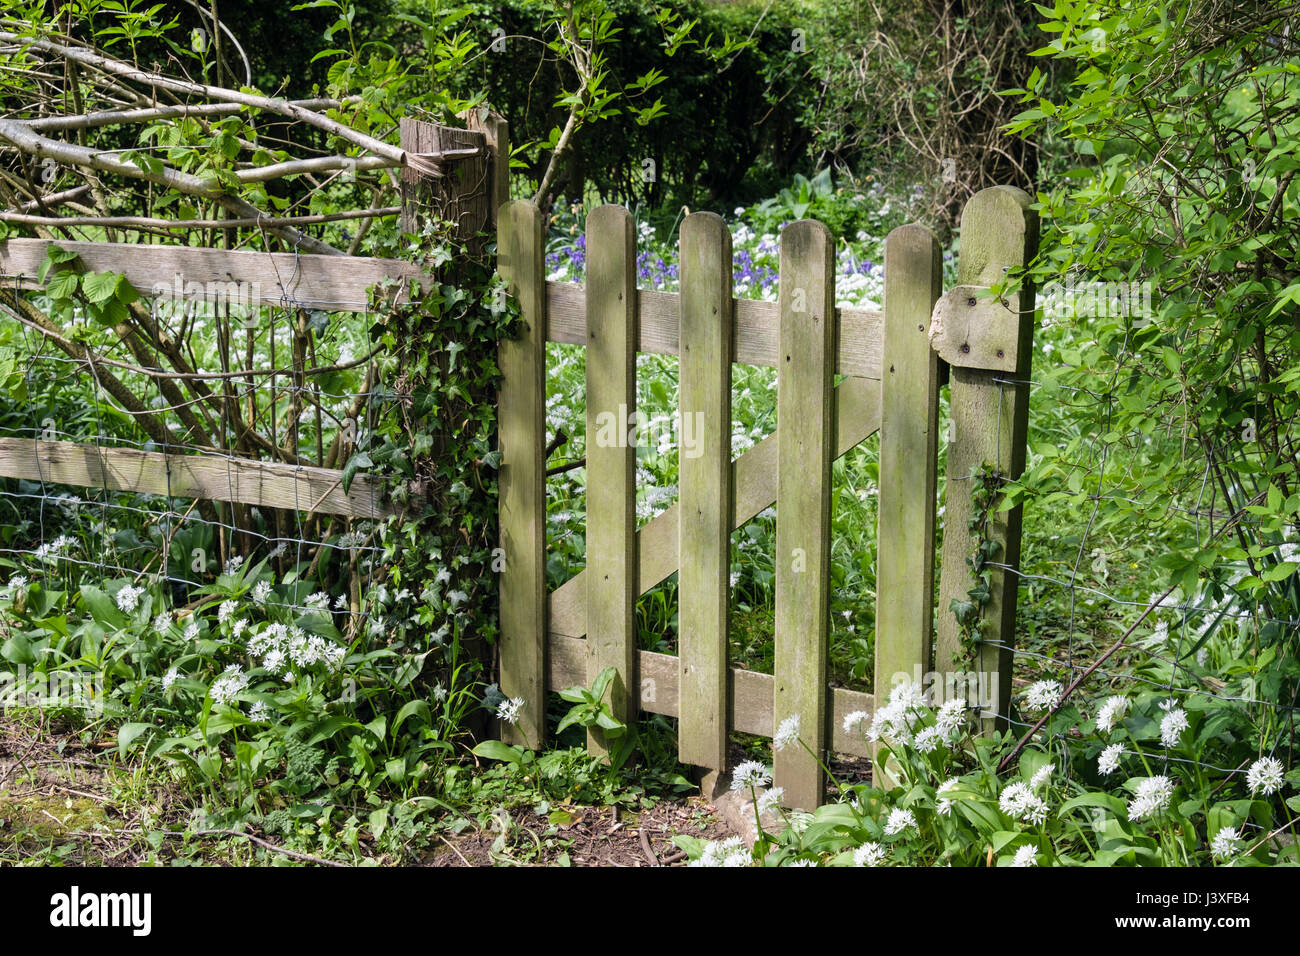 Porte de jardin en bois sur limite avec l'ail des ours ou Allium ursinum) Ramsons (jacinthes et la floraison au printemps. Yorkshire, Angleterre, Royaume-Uni, Angleterre Banque D'Images